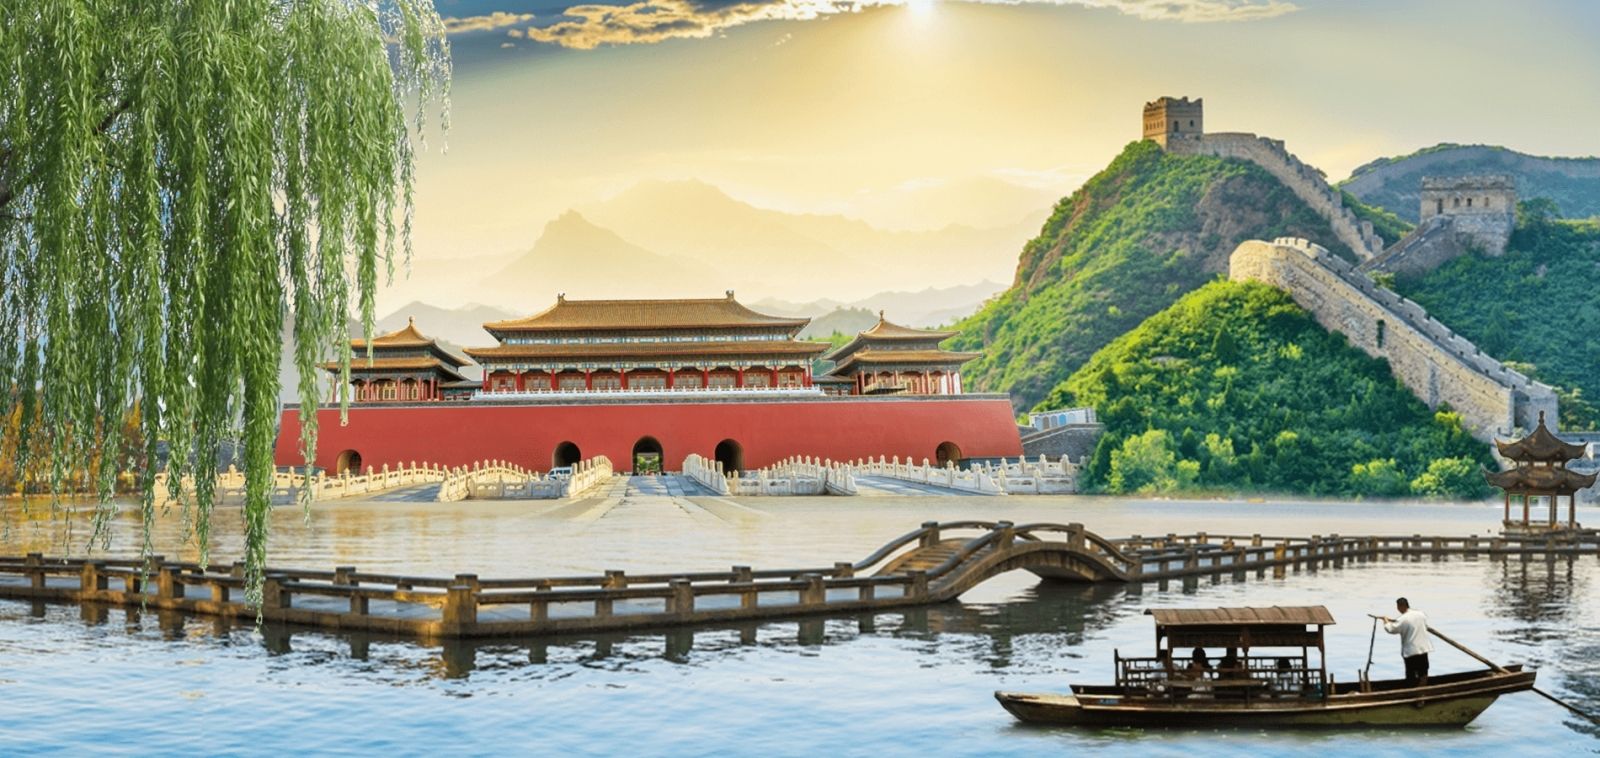 Trung Quốc nổi tiếng với cảnh đẹp và văn hoá lịch sử lâu đời